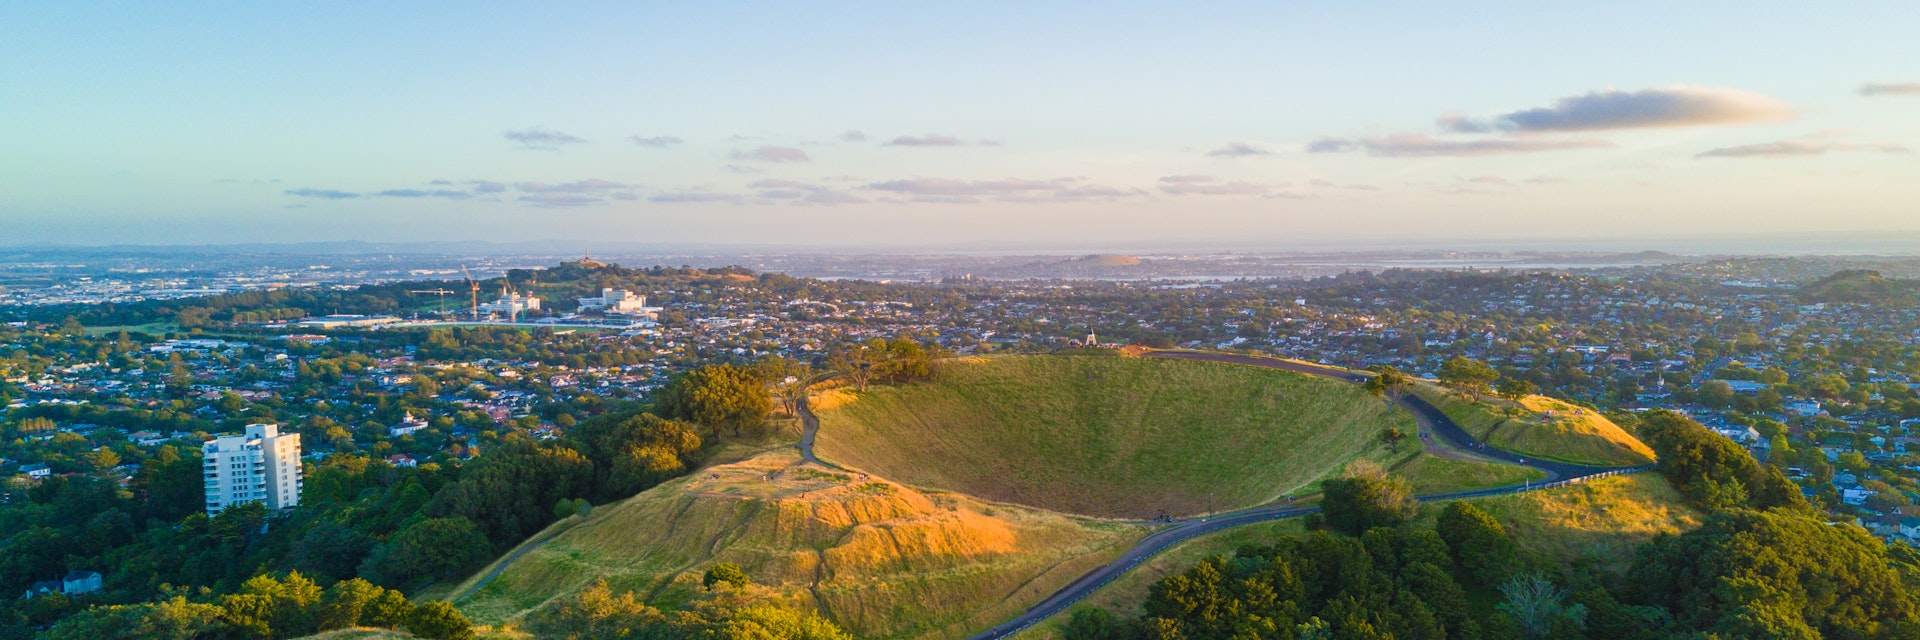 Aerial of the Mount Eden volcano in Auckland, New Zealand.